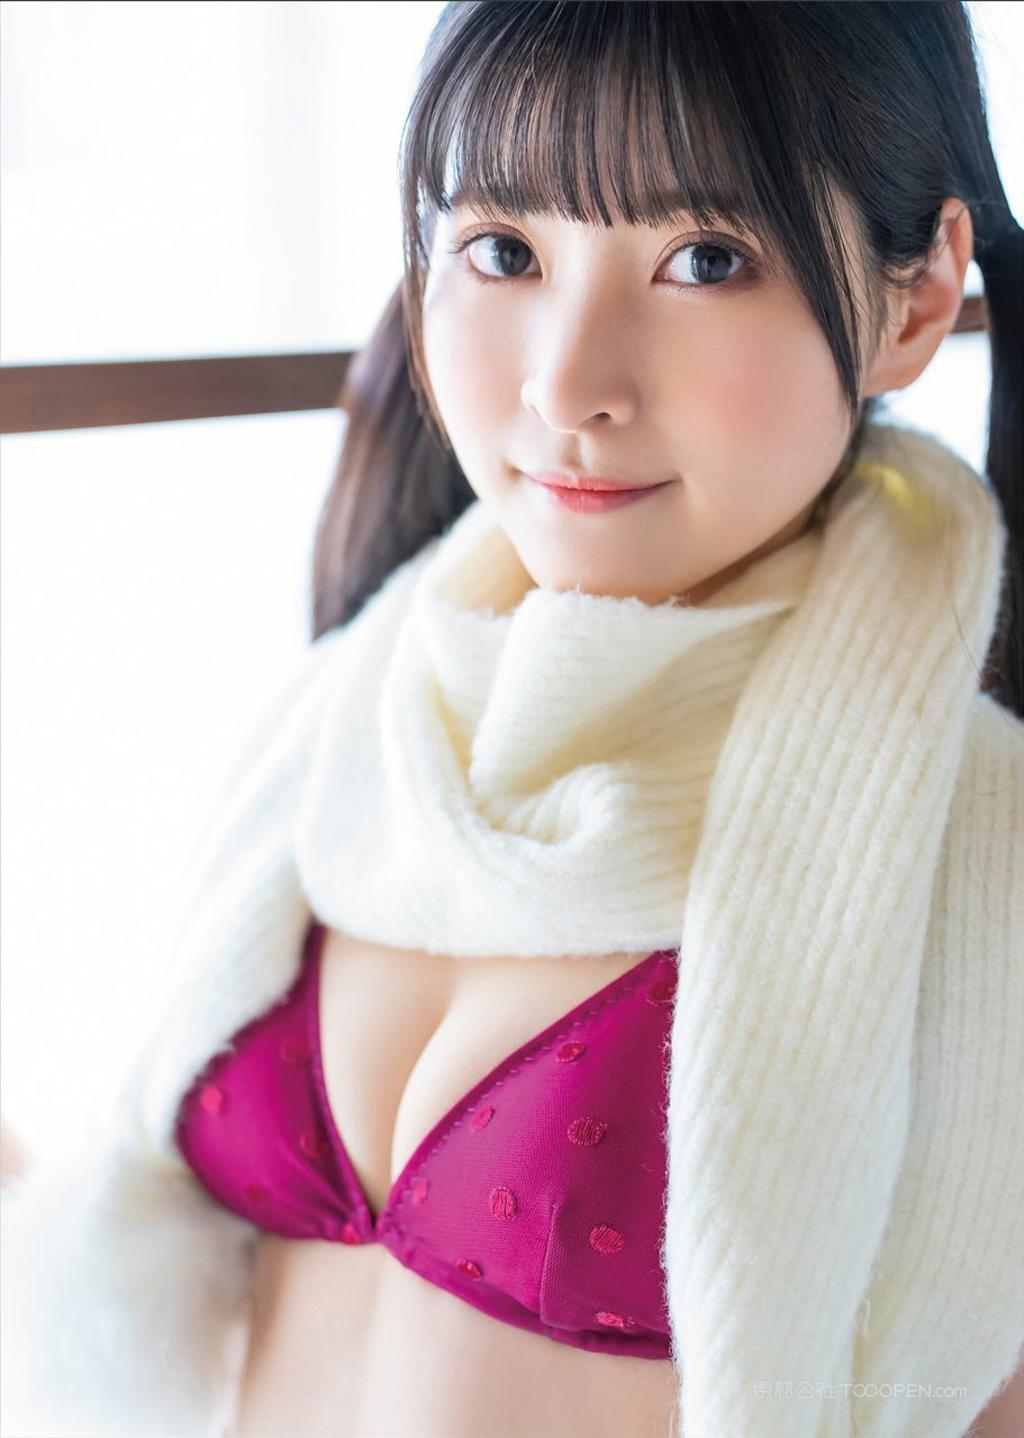 MM131日本av美少女性感艺术照写真图片